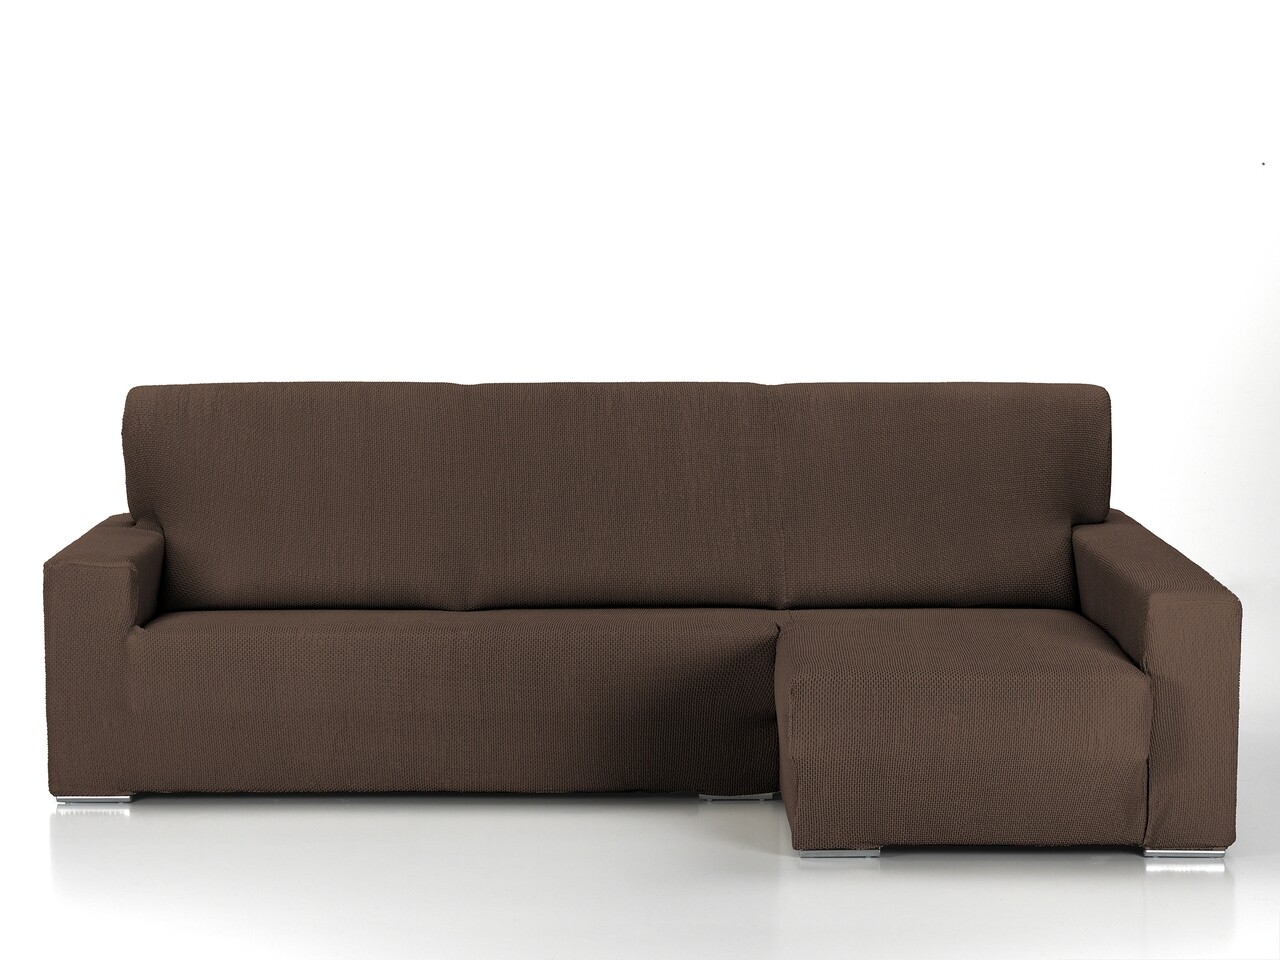 Belmarti rugalmas kanapéhuzat, milan, hosszú kar, barna